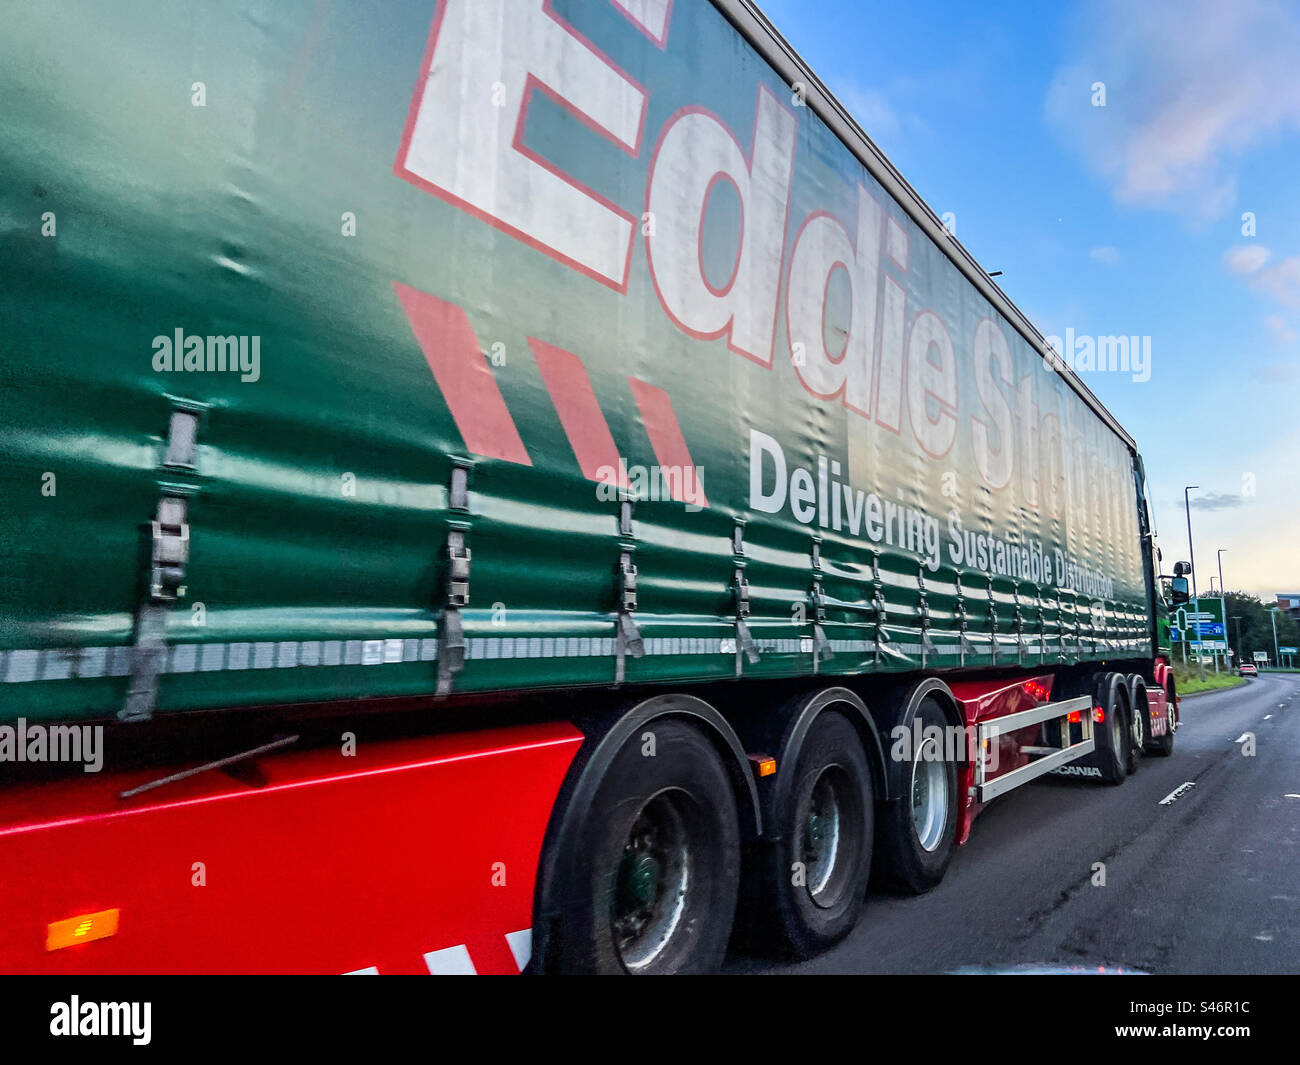 Eddie Stobart lorry on road Stock Photo